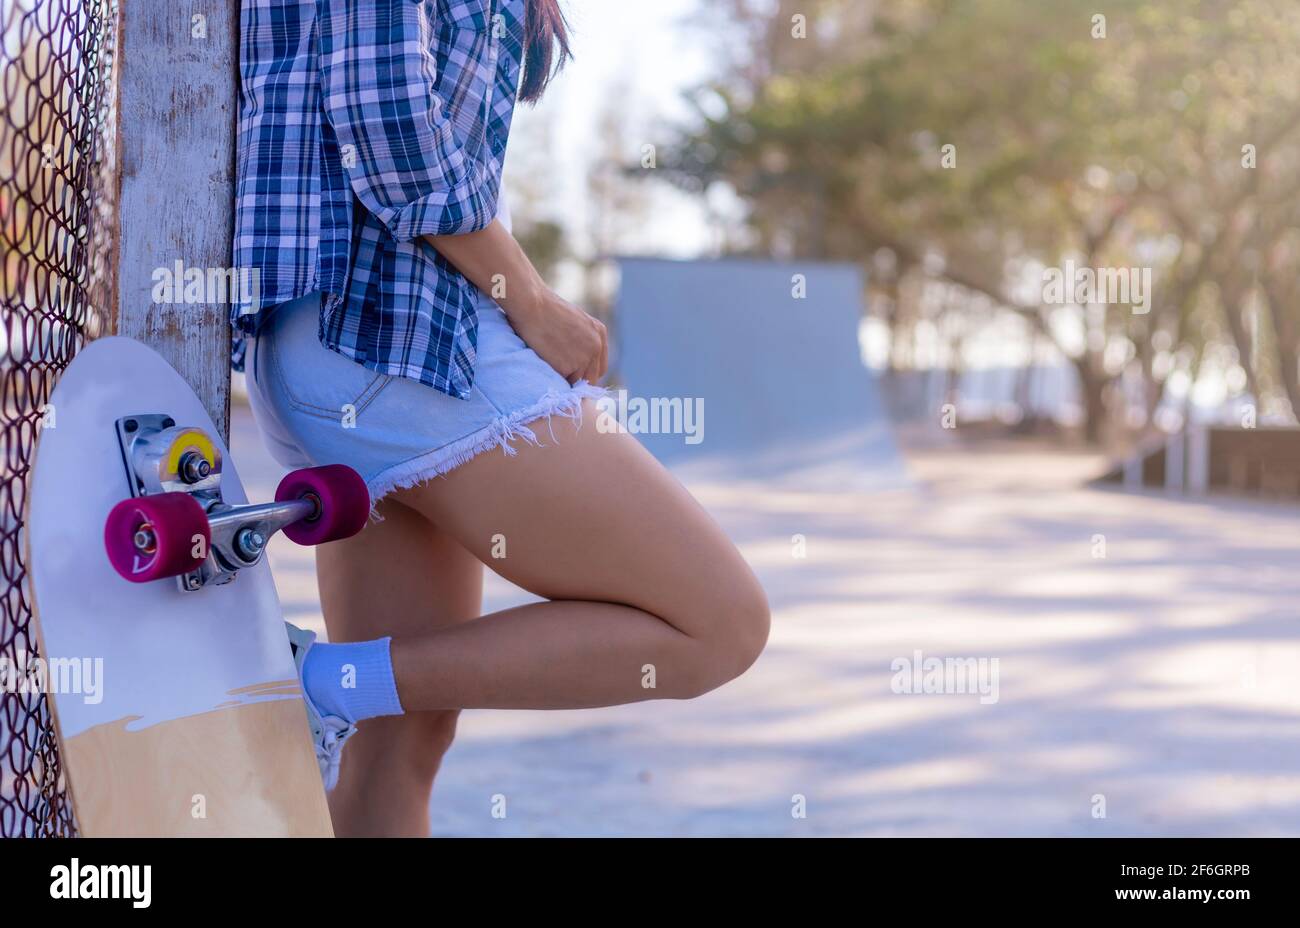 Las mujeres jóvenes que llevan pantalones cortos jeans y camisa de manga  larga apoyada en un polo de acero con un skate de surf al lado. Niña de pie  y relajarse después